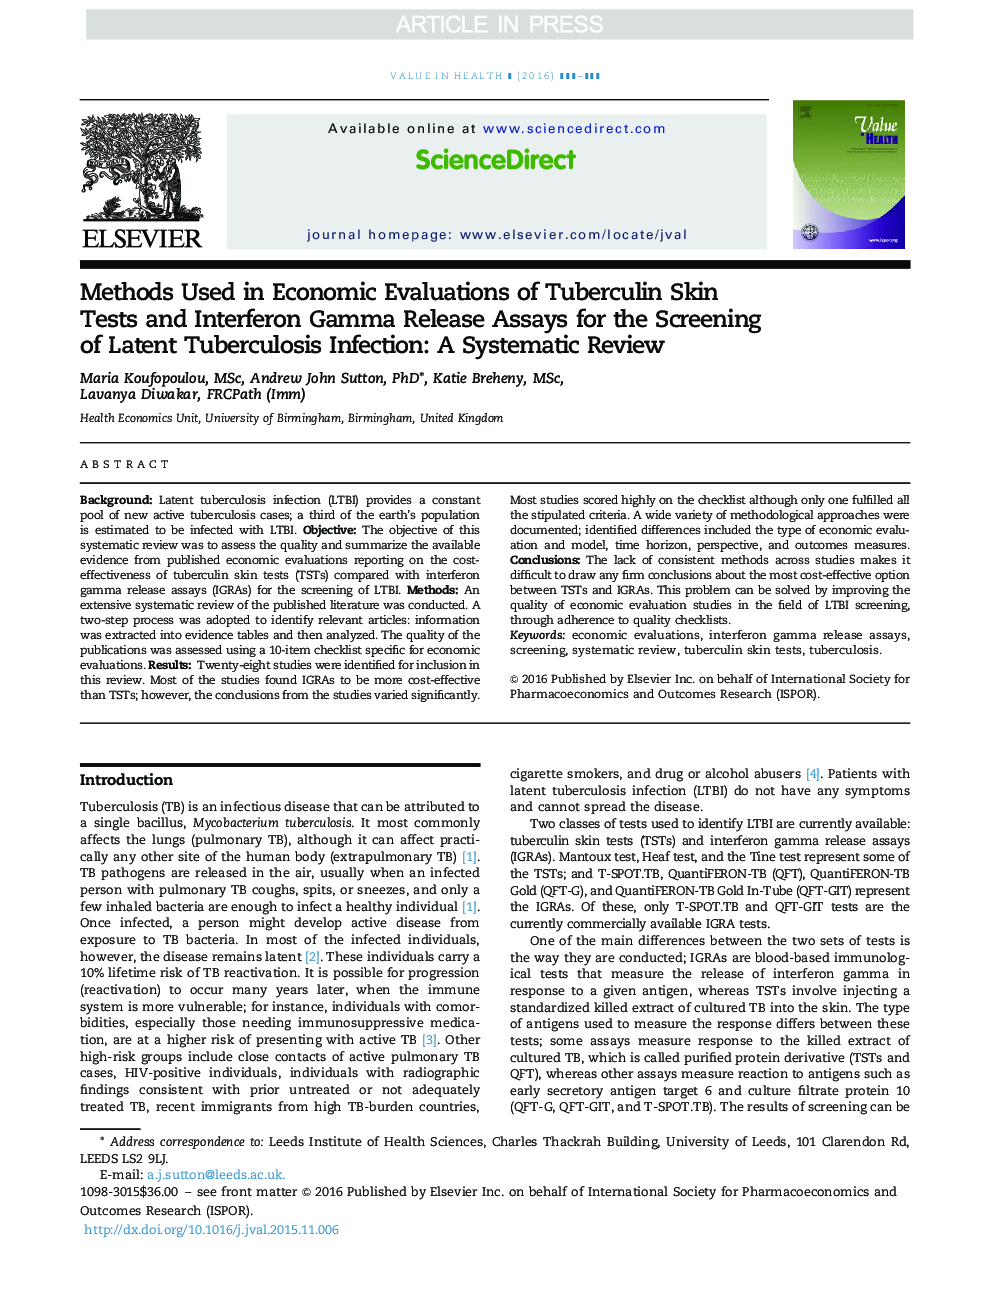 روش های مورد استفاده در ارزیابی های اقتصادی آزمایشات پوستی توبرکولین و آزمایش های آزمایشی گاما اینترفرون برای غربال کردن عفونت سل سلولی: یک بررسی سیستماتیک 